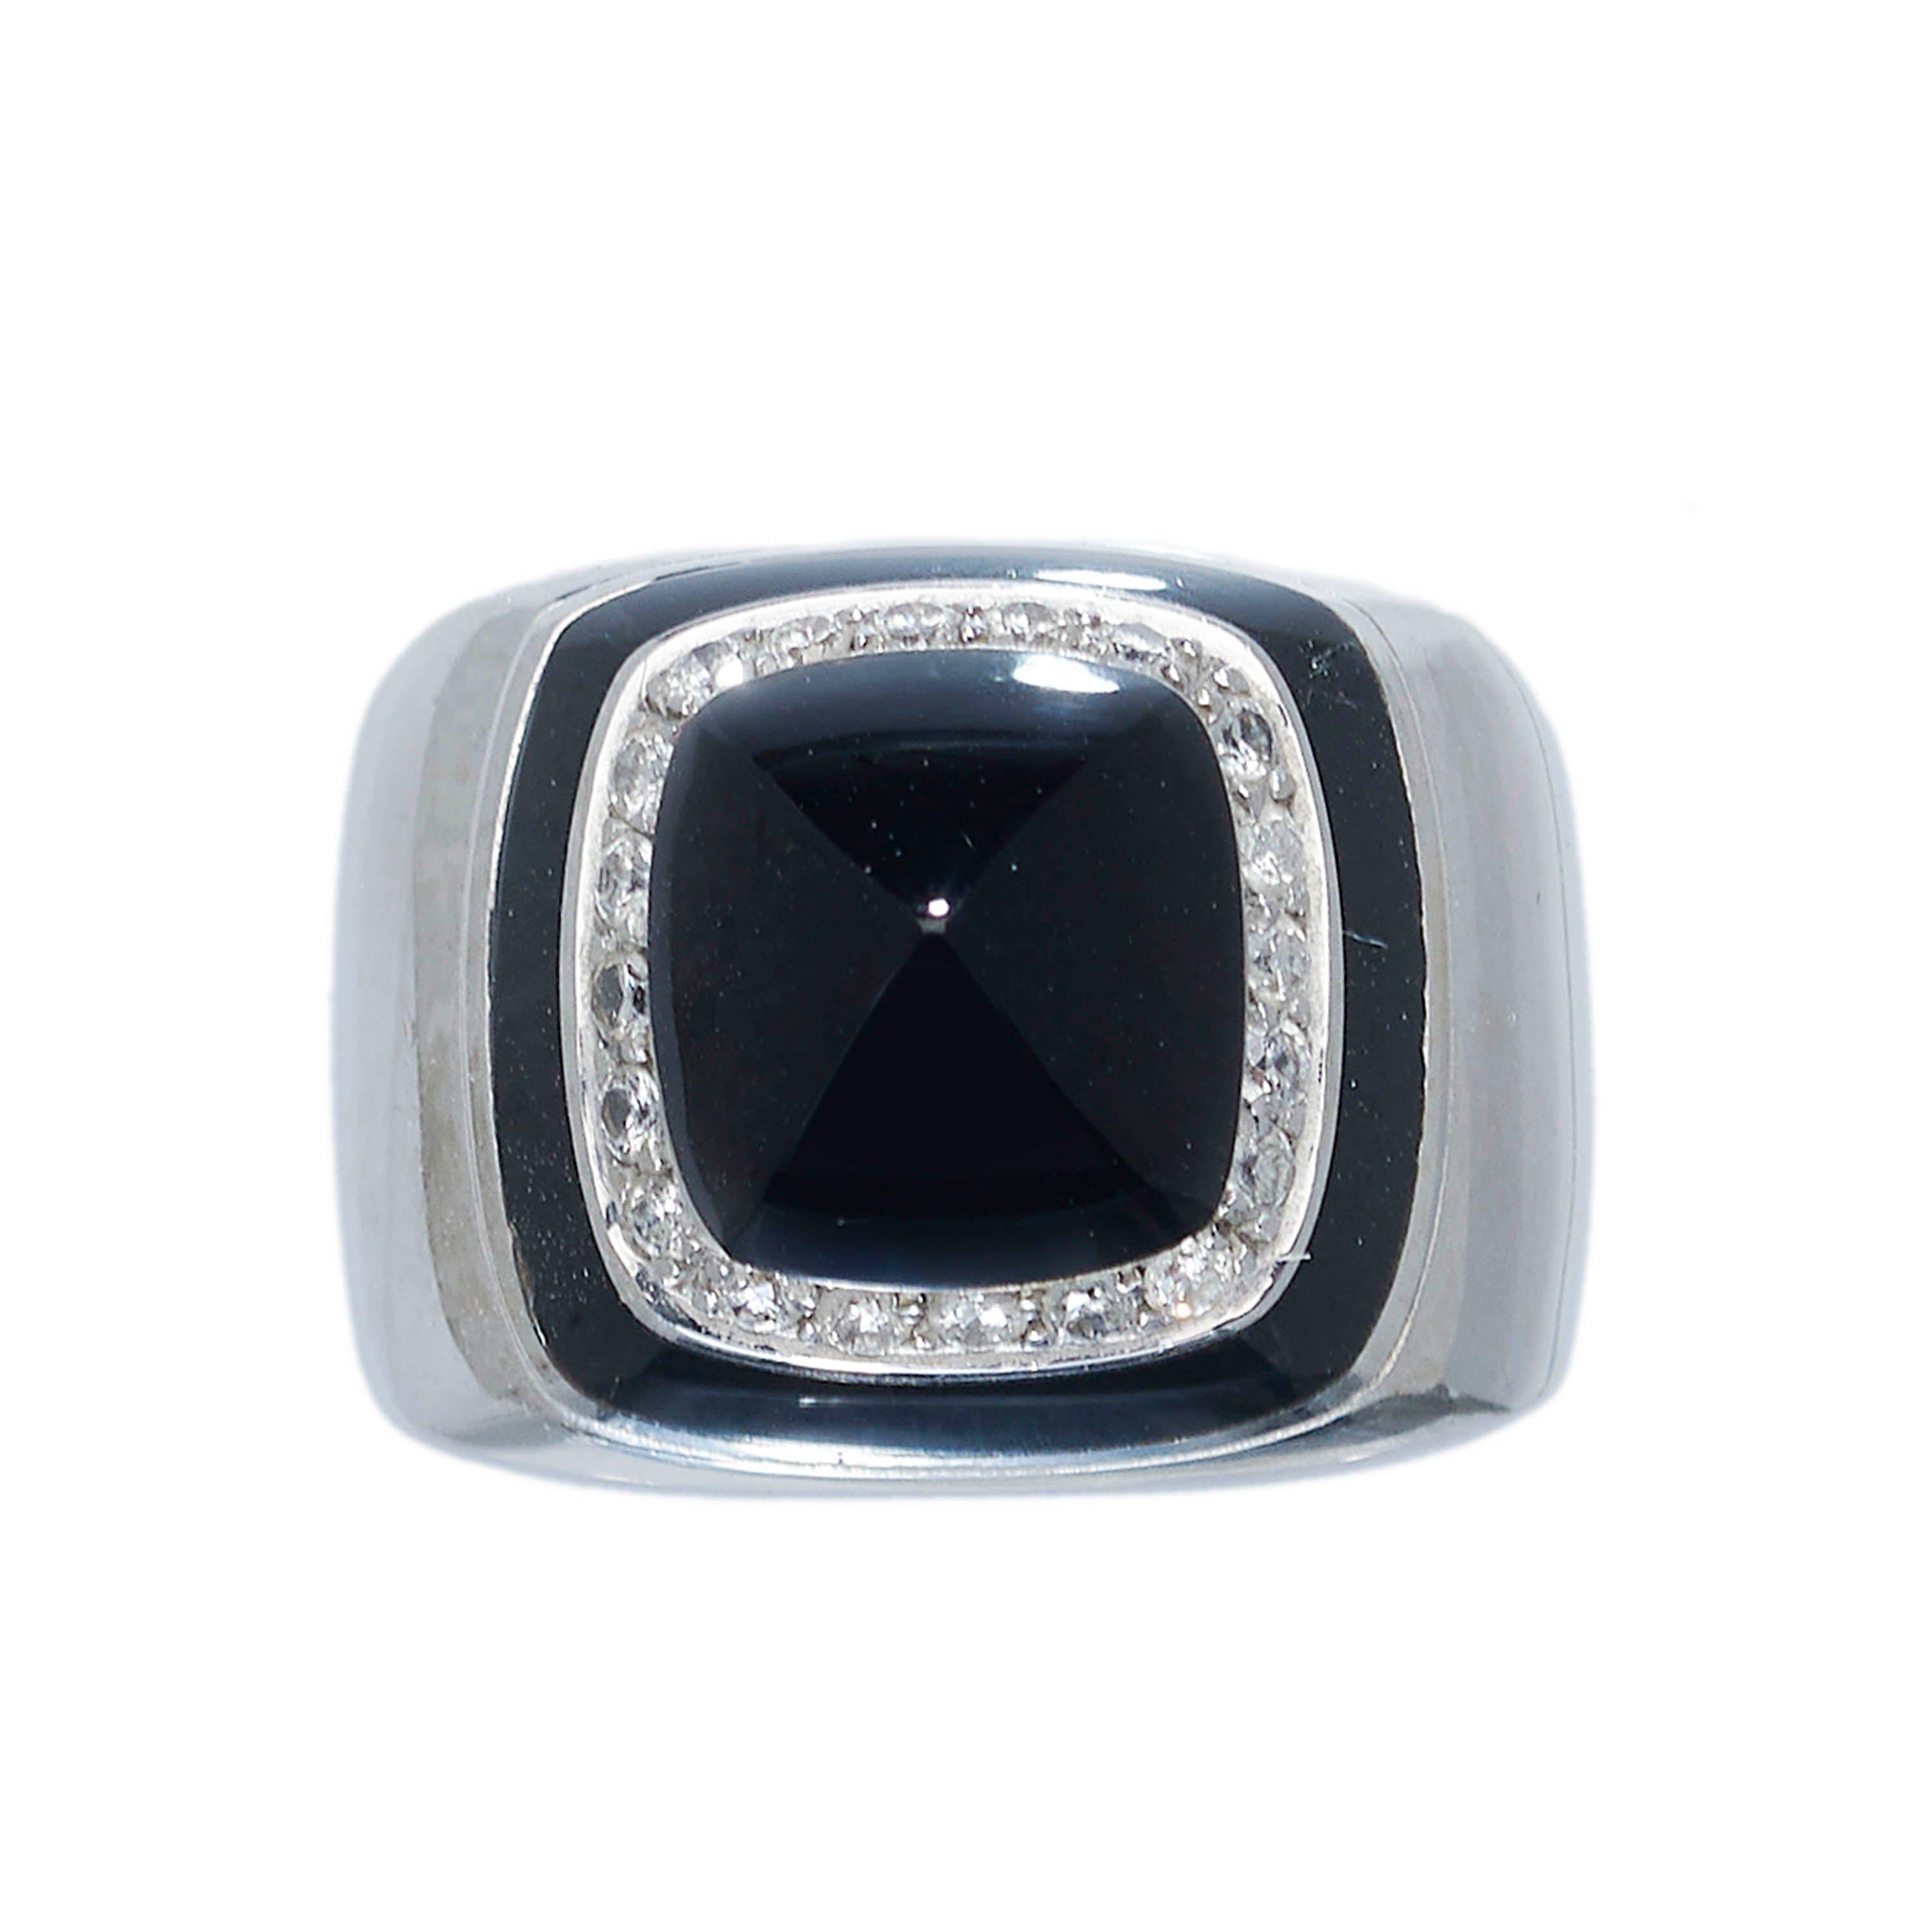 Ein italienischer Vintage-Ring aus schwarzem Onyx und Diamanten, besetzt mit einem quadratischen, zuckerhutförmigen schwarzen Onyx im Cabochon-Schliff, umgeben von einem Kanal aus runden Diamanten im Brillantschliff, in Kornfassung, mit einer